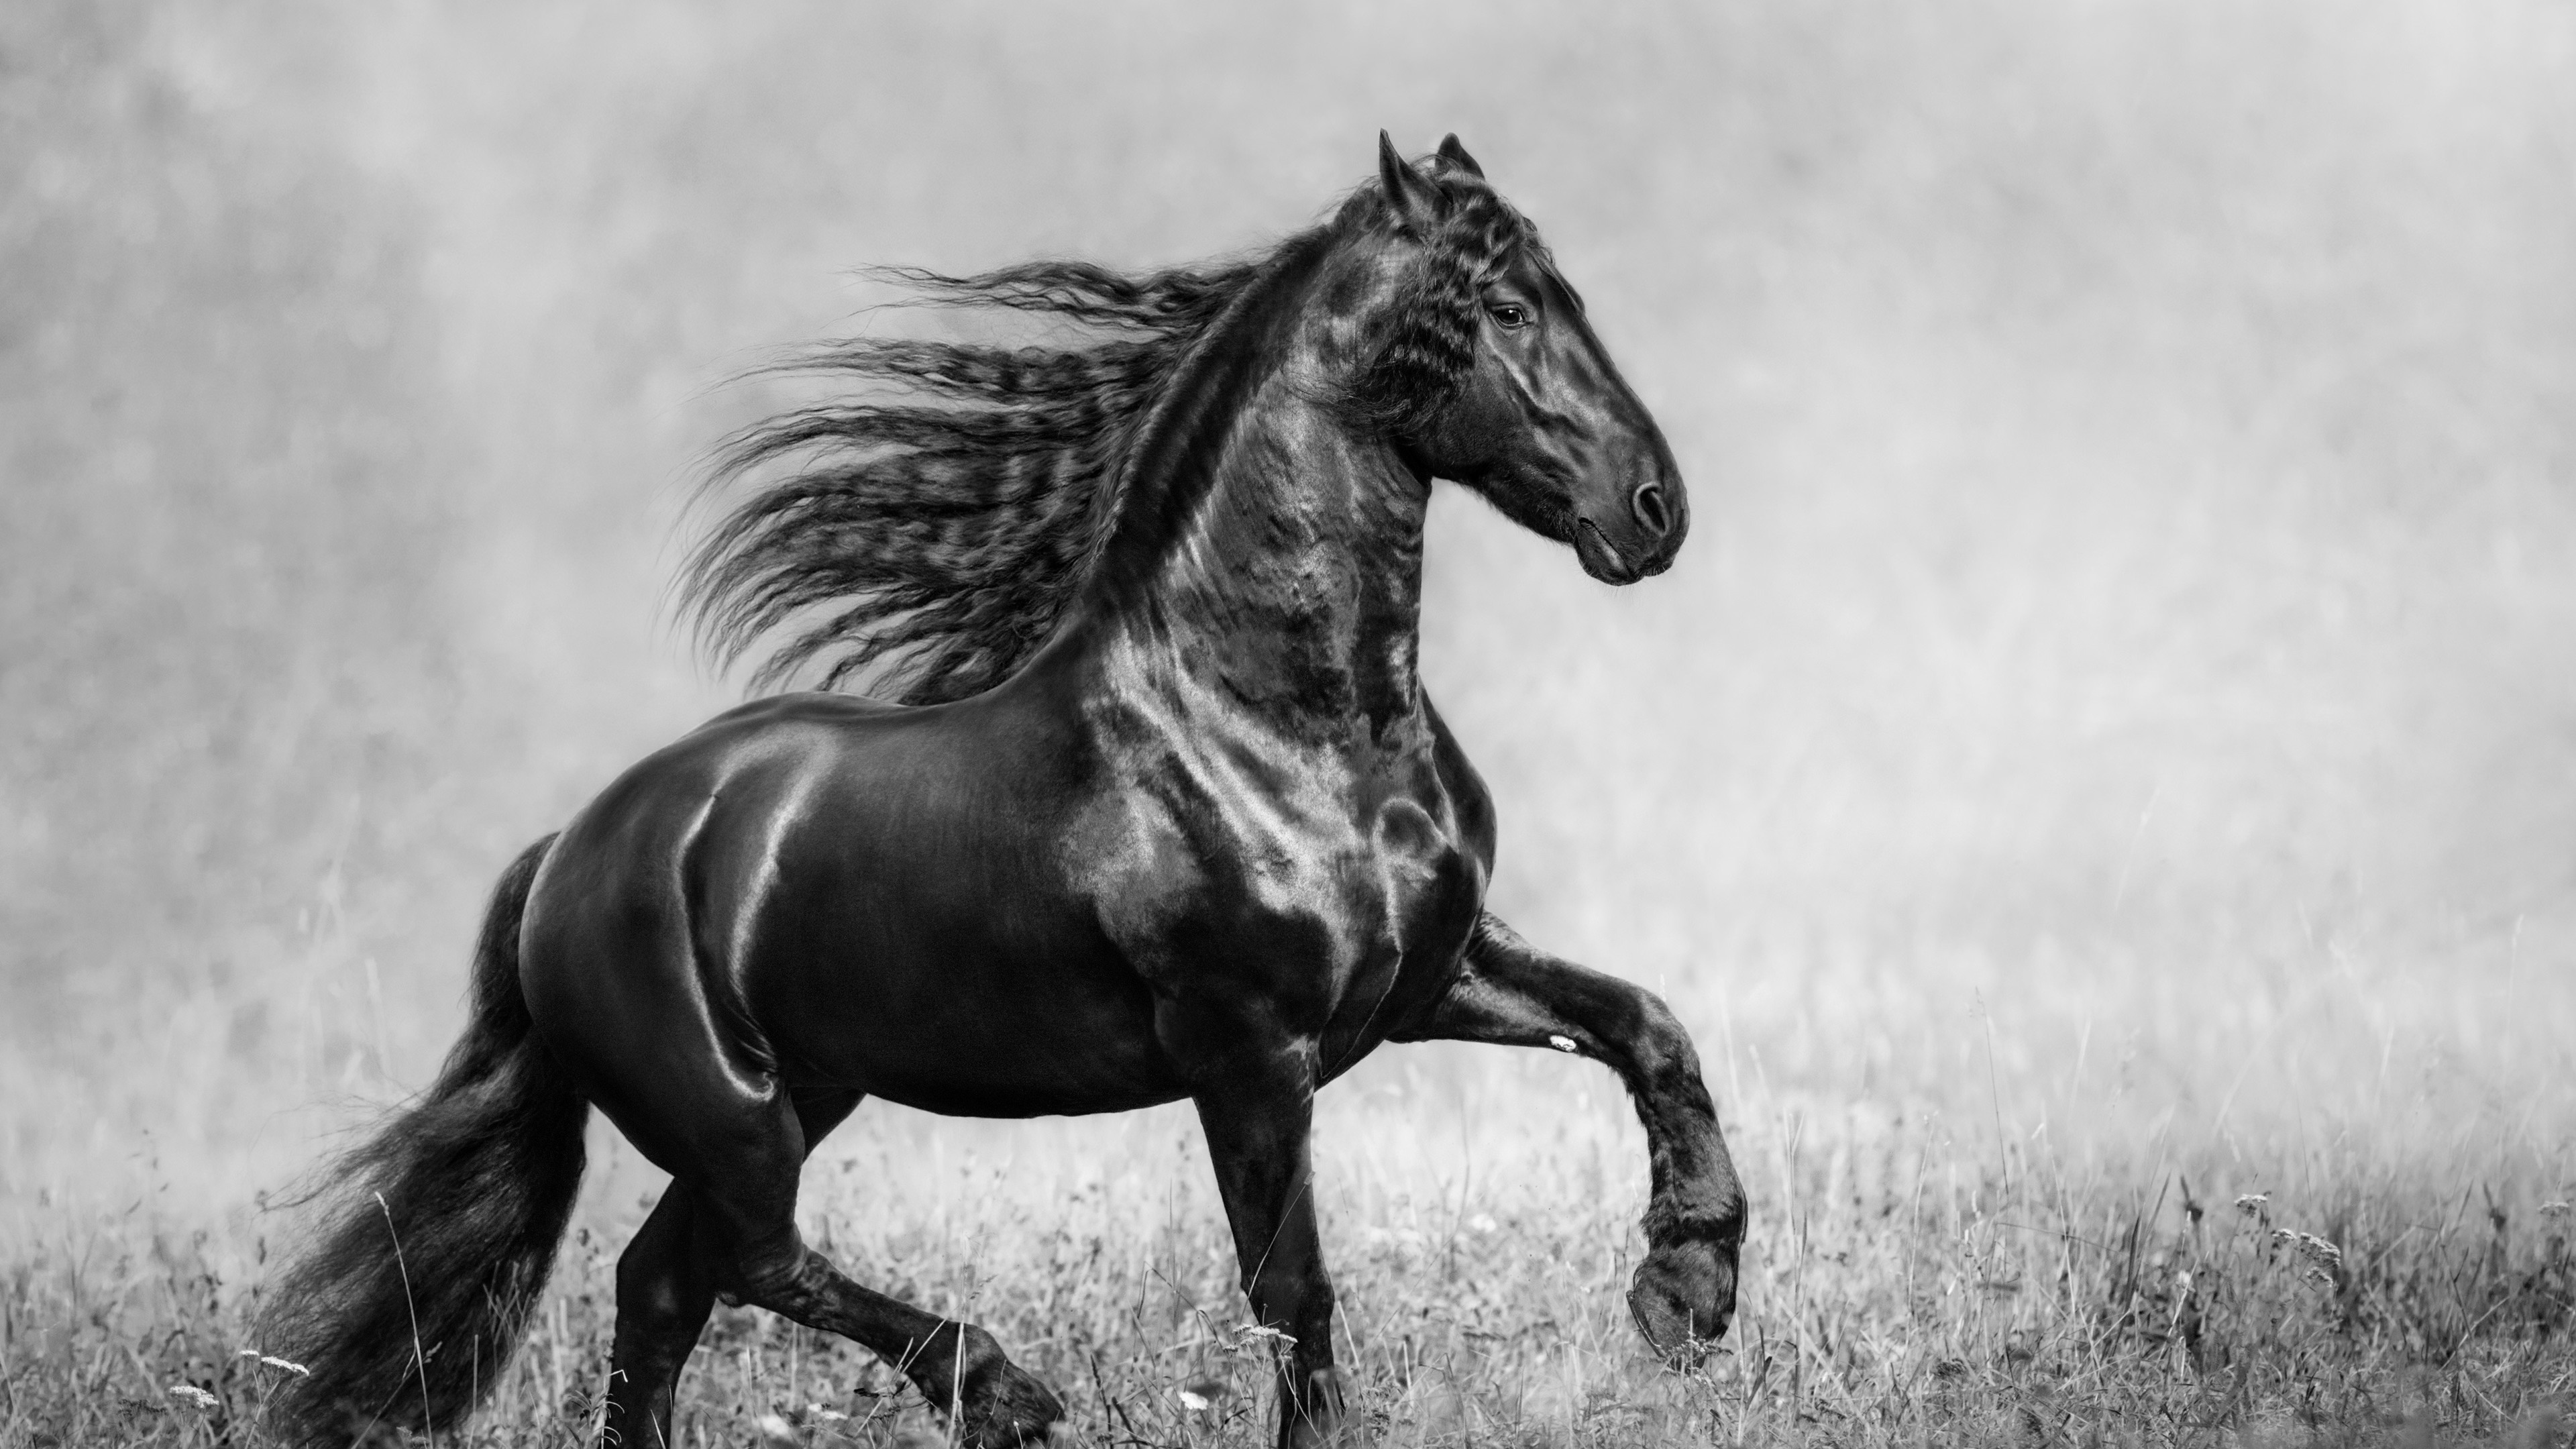 horse black and white 4k 1542238178 - Horse Black And White 4k - monochrome wallpapers, horse wallpapers, black and white wallpapers, animals wallpapers